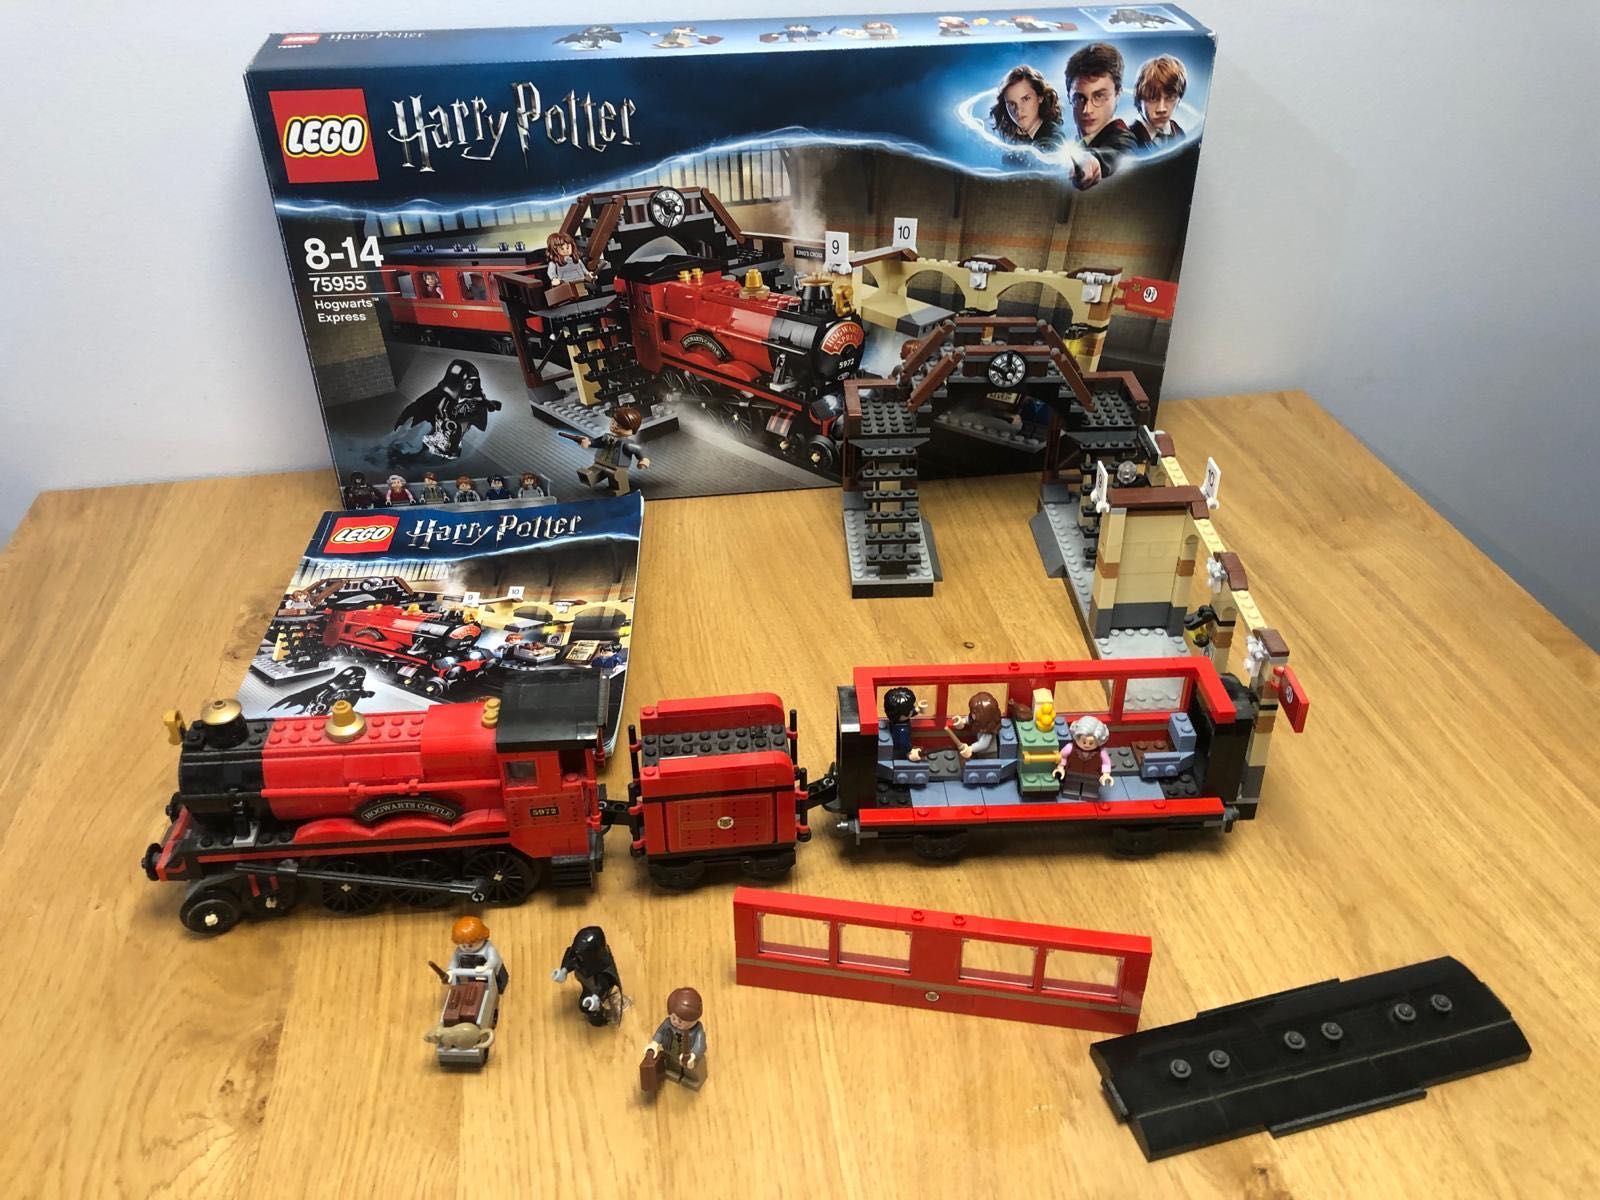 Lego 75955 Hogwarts Express